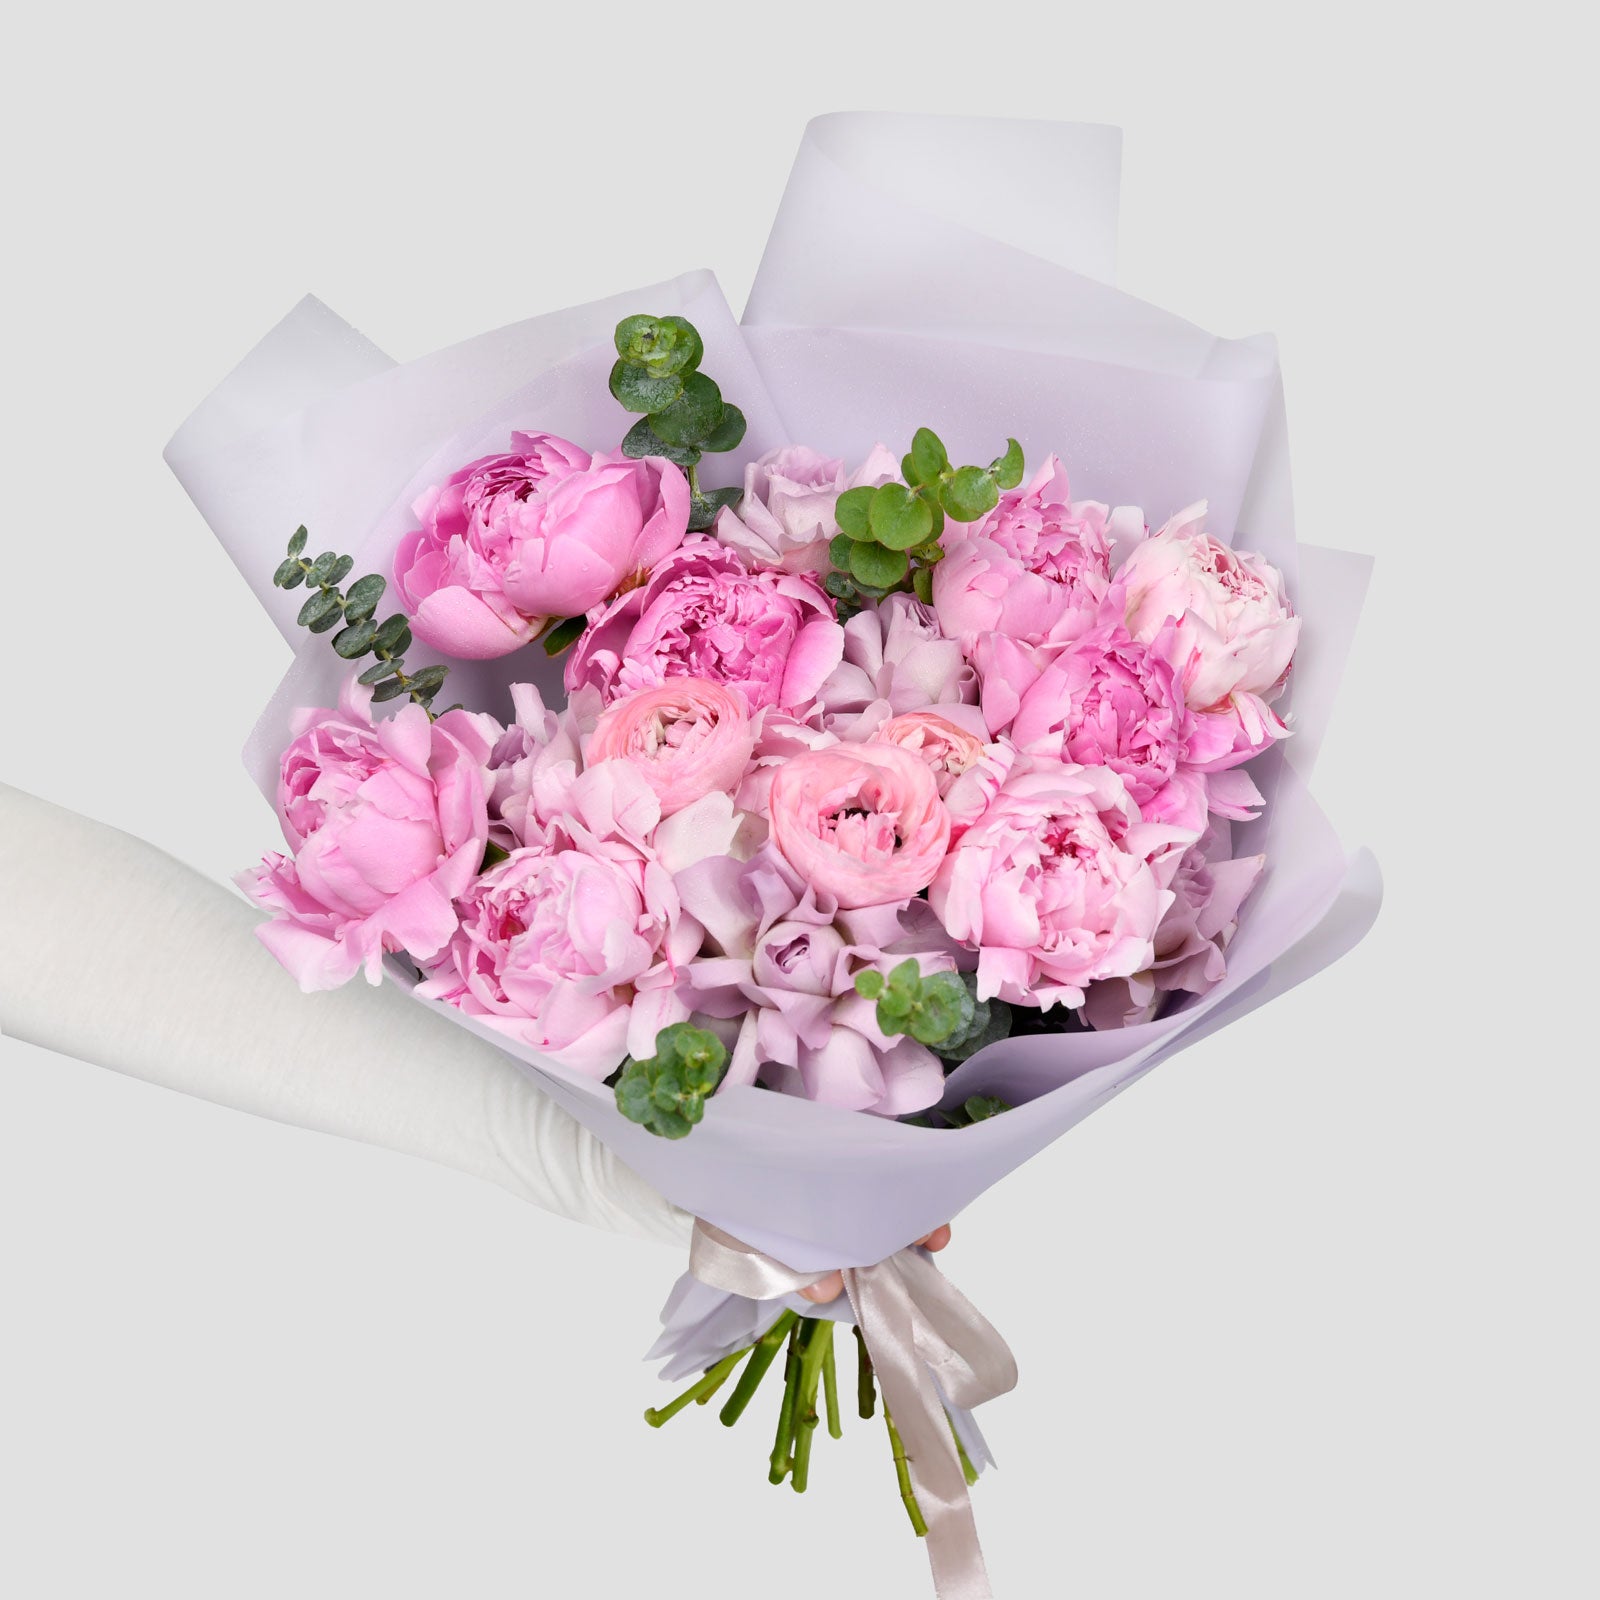 Buchet bujori naturali roz, trandafiri si ranunculus roz, 1